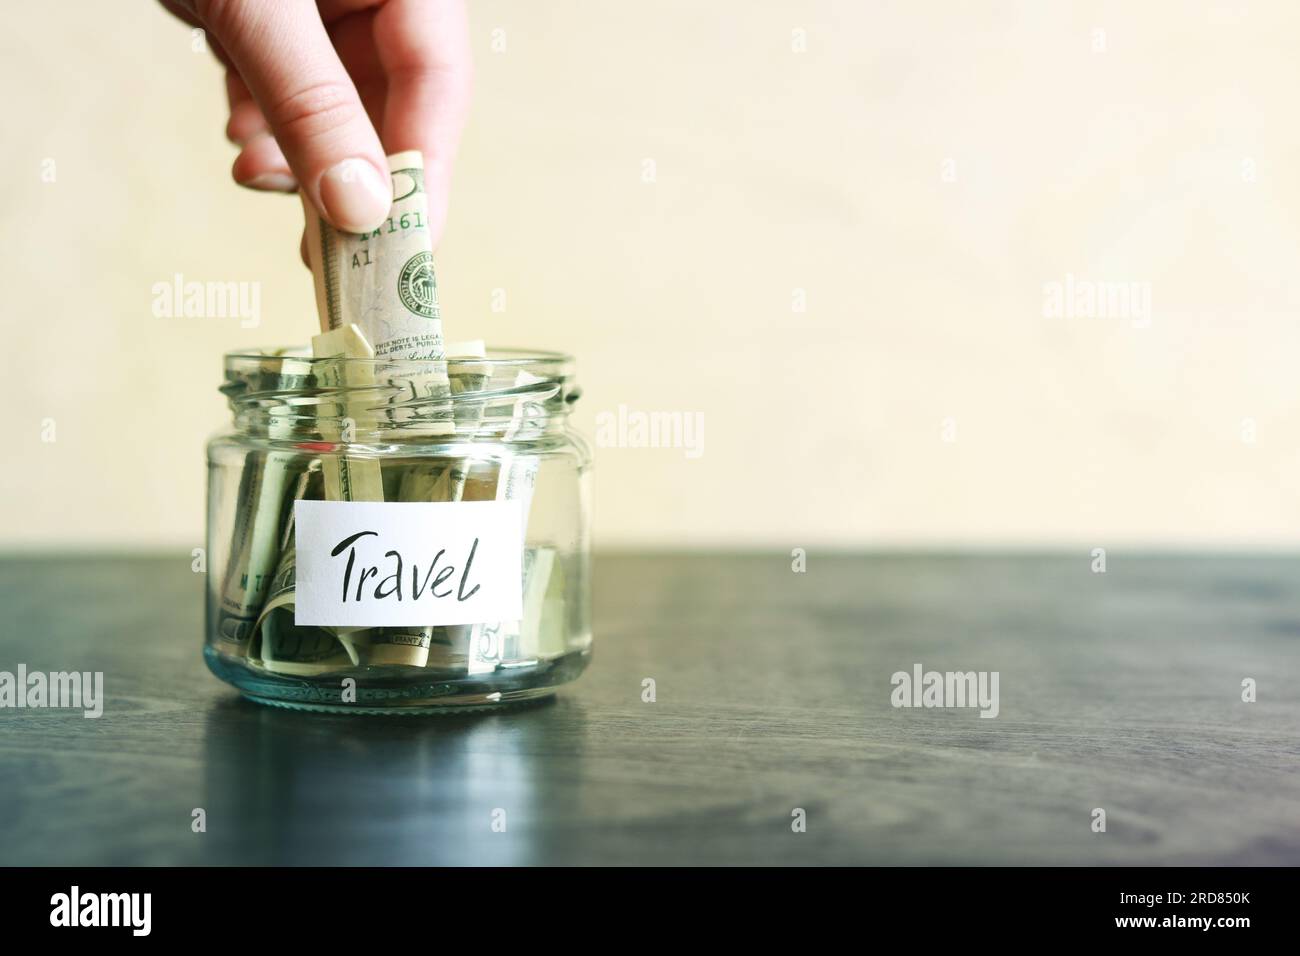 Salvadanaio con dollari per viaggiare. Vaso di vetro con soldi. La donna mette più soldi nel salvadanaio. Foto Stock